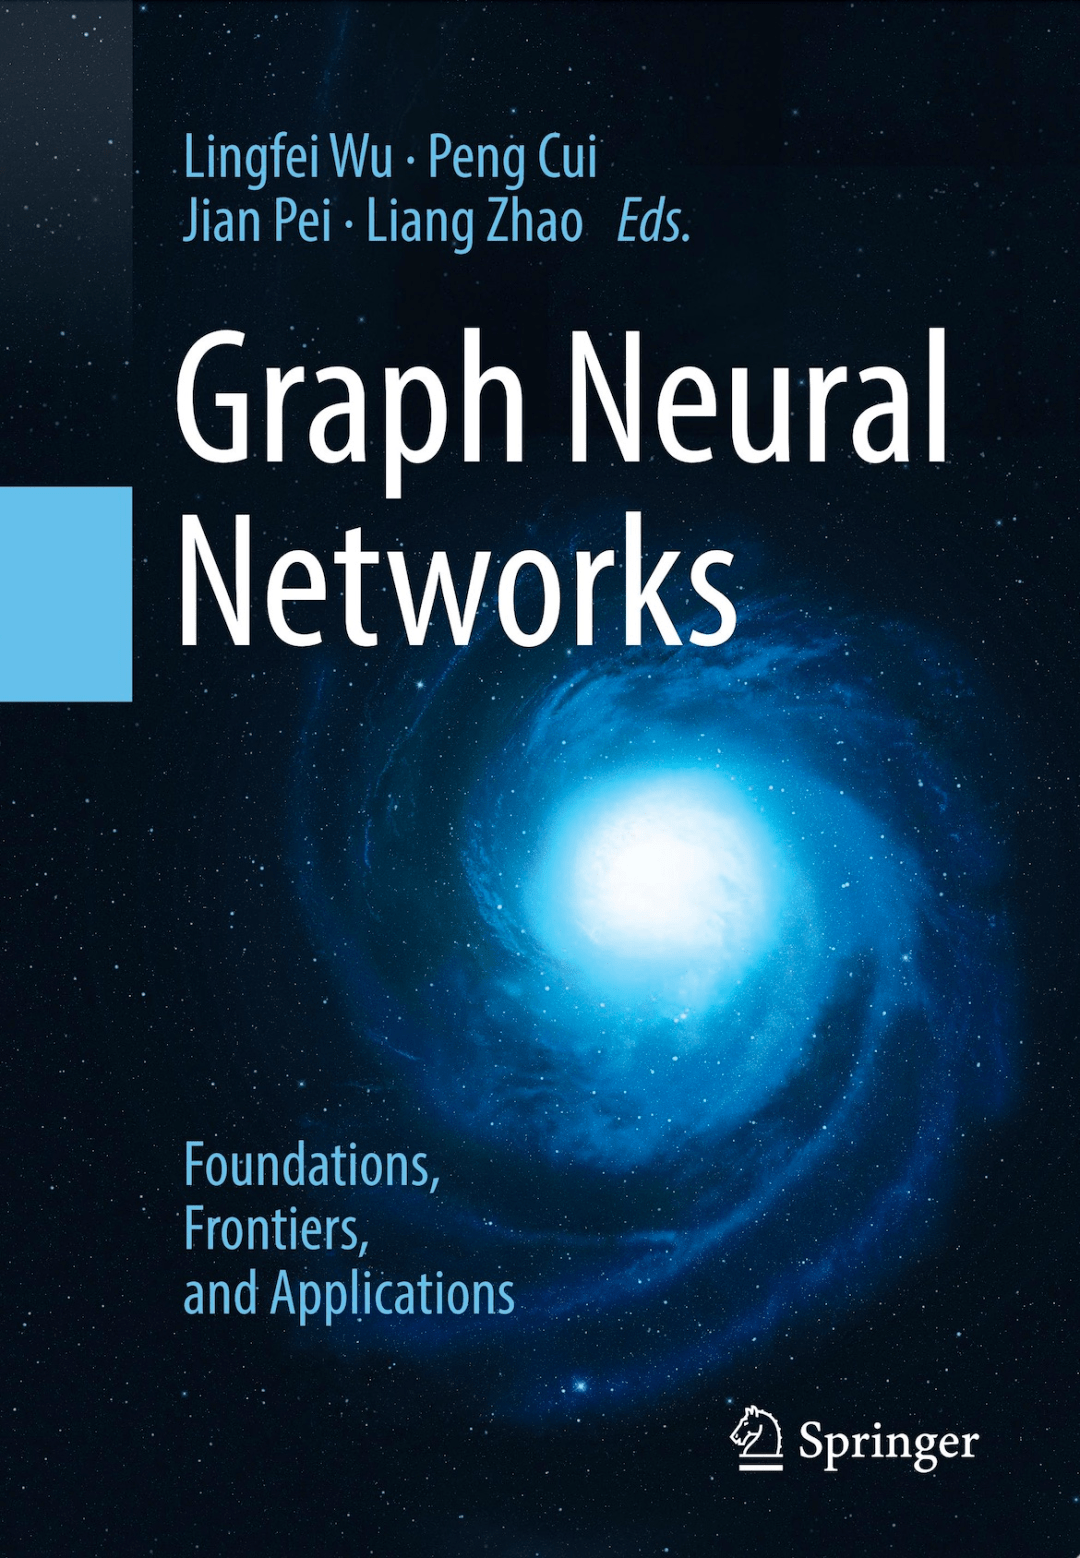 裴健等权威学者联合撰写，一书读懂图神经网络的基础、前沿、应用_研究  image